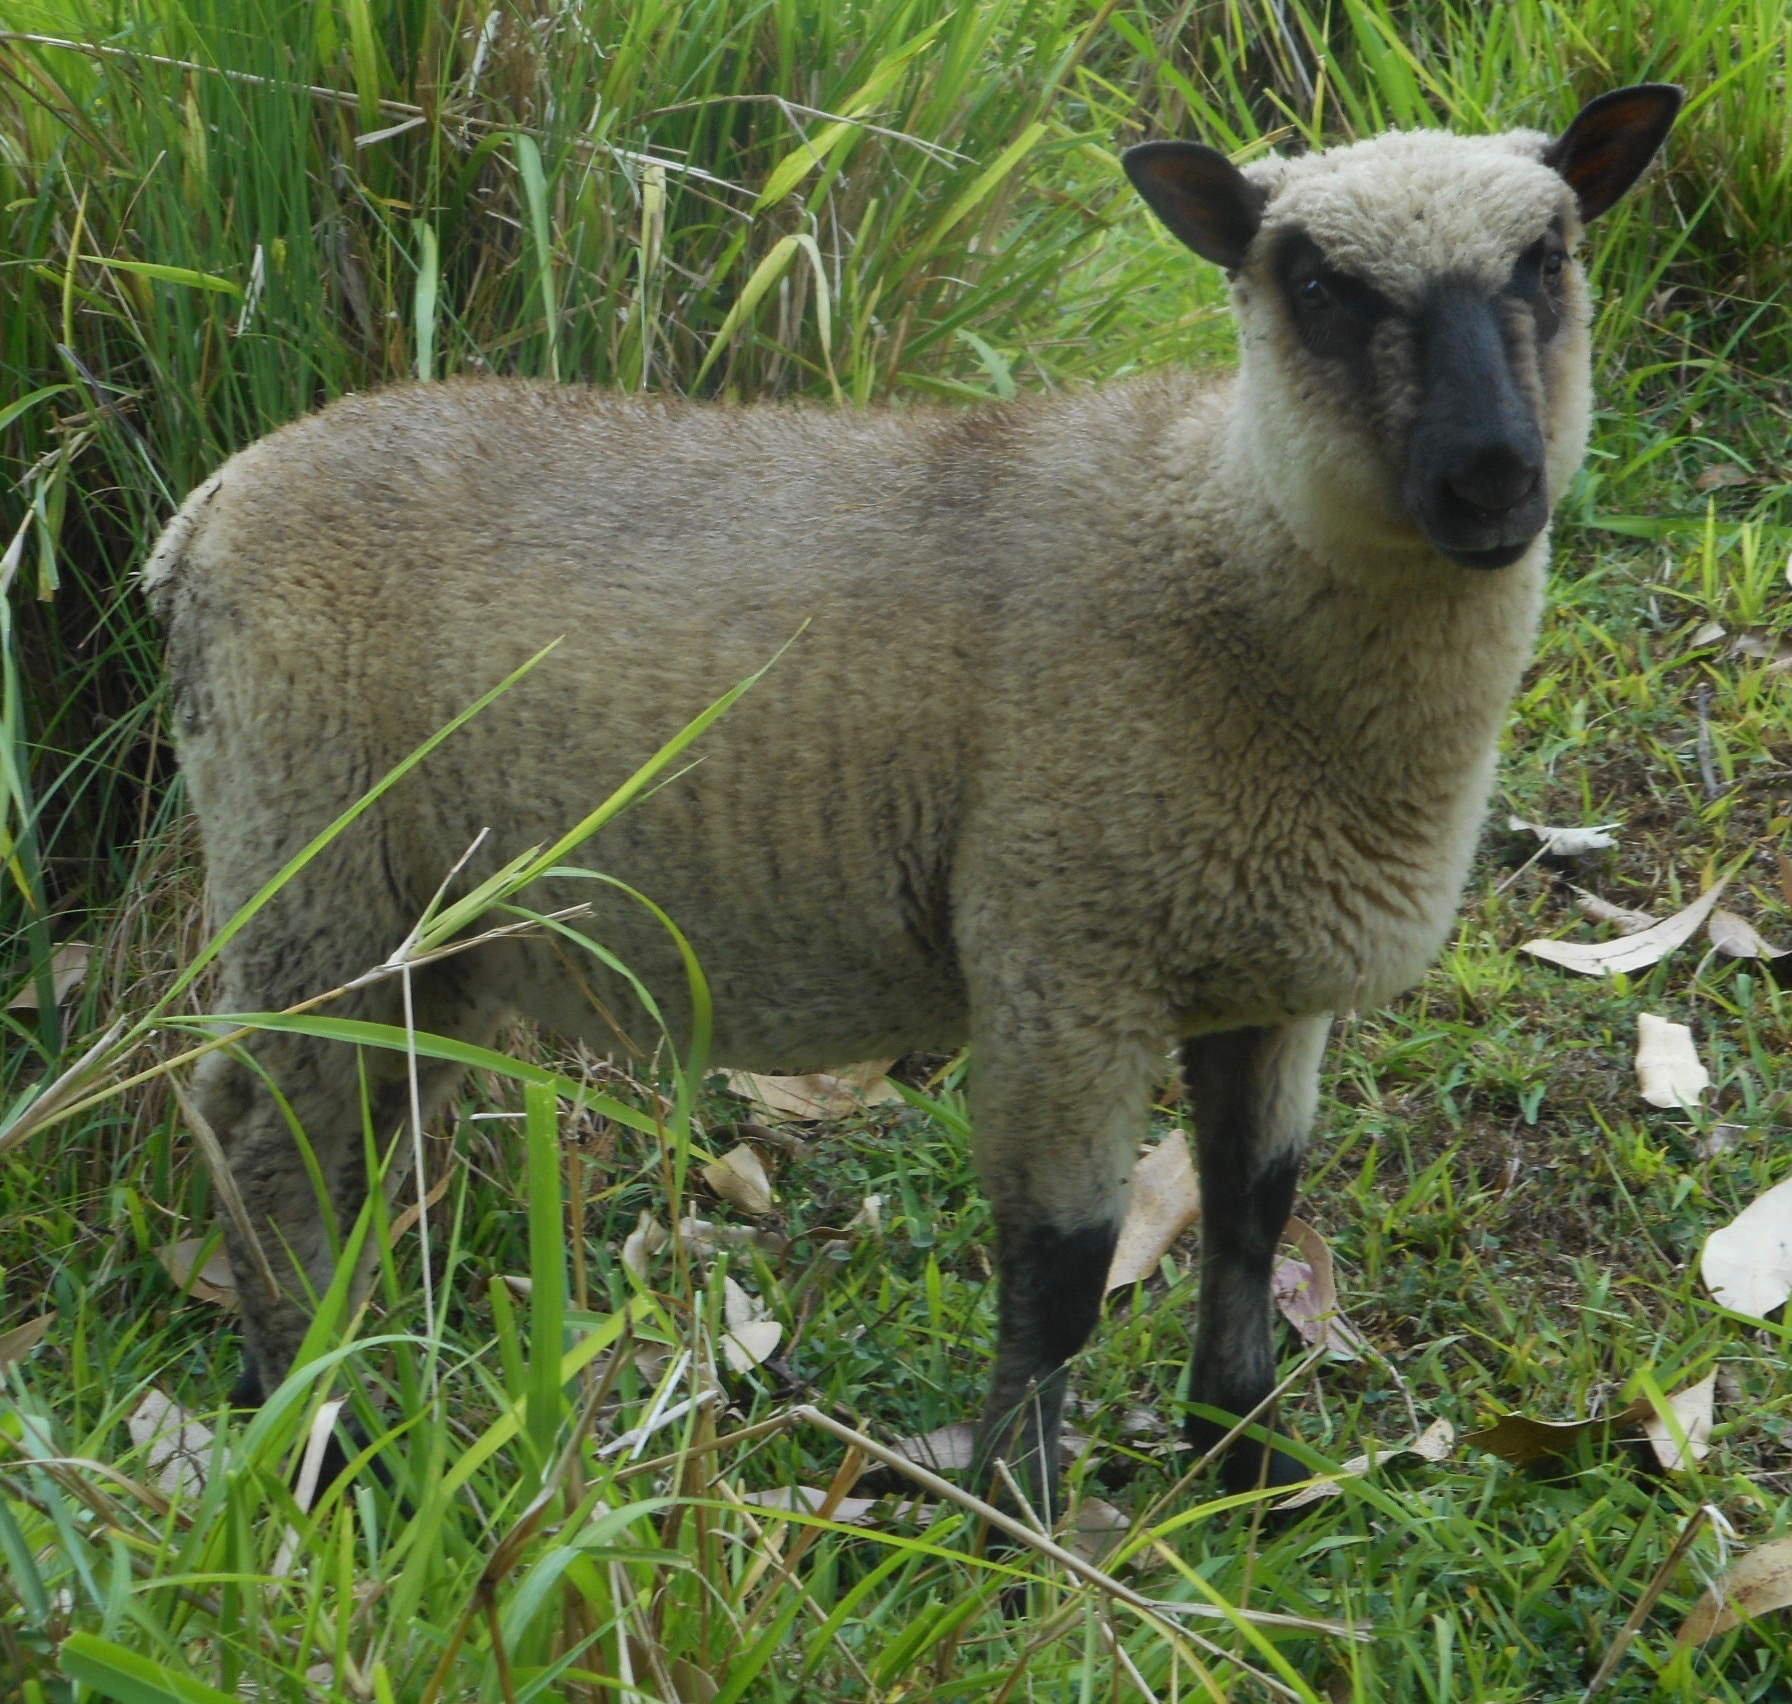 June's 1st born ram lamb